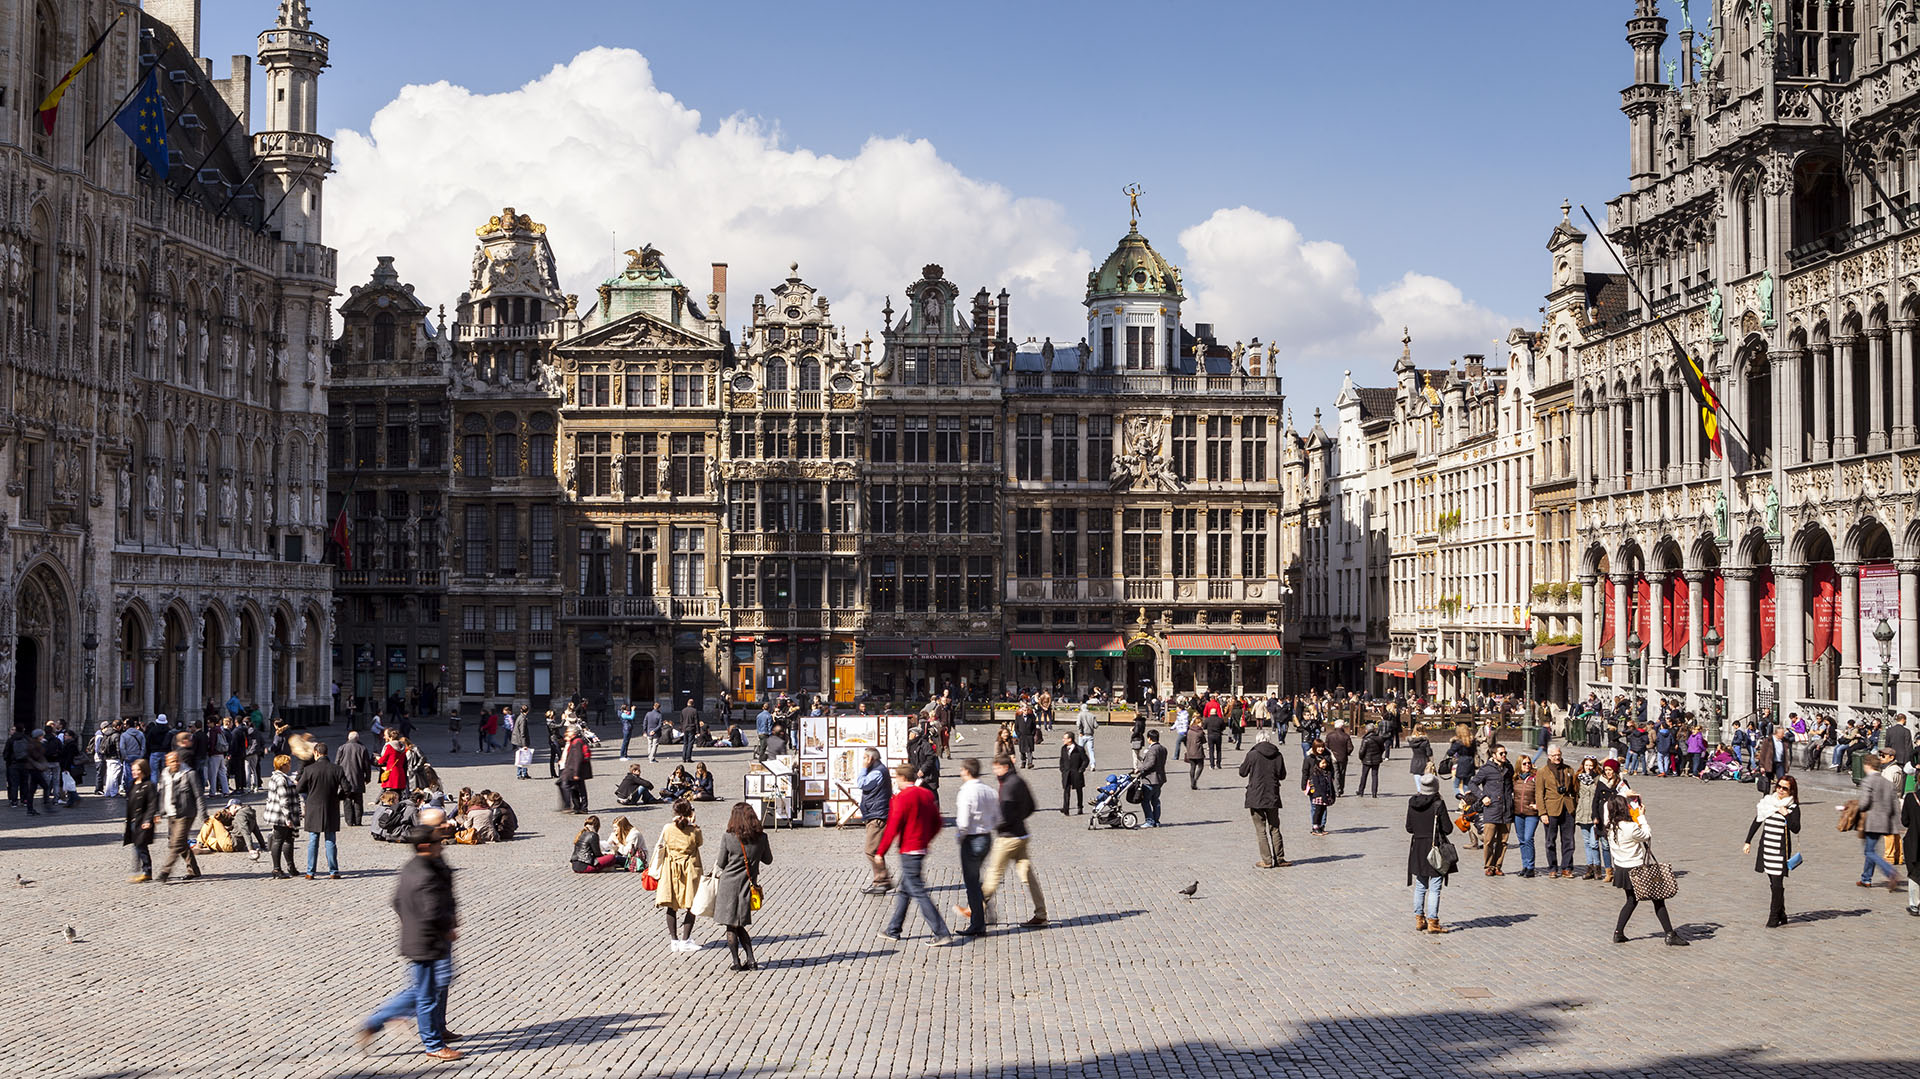 Personas pasean en la Grand-Place de Bruselas, la capital del país, que fue declarada como patrimonio de la humanidad por la UNESCO